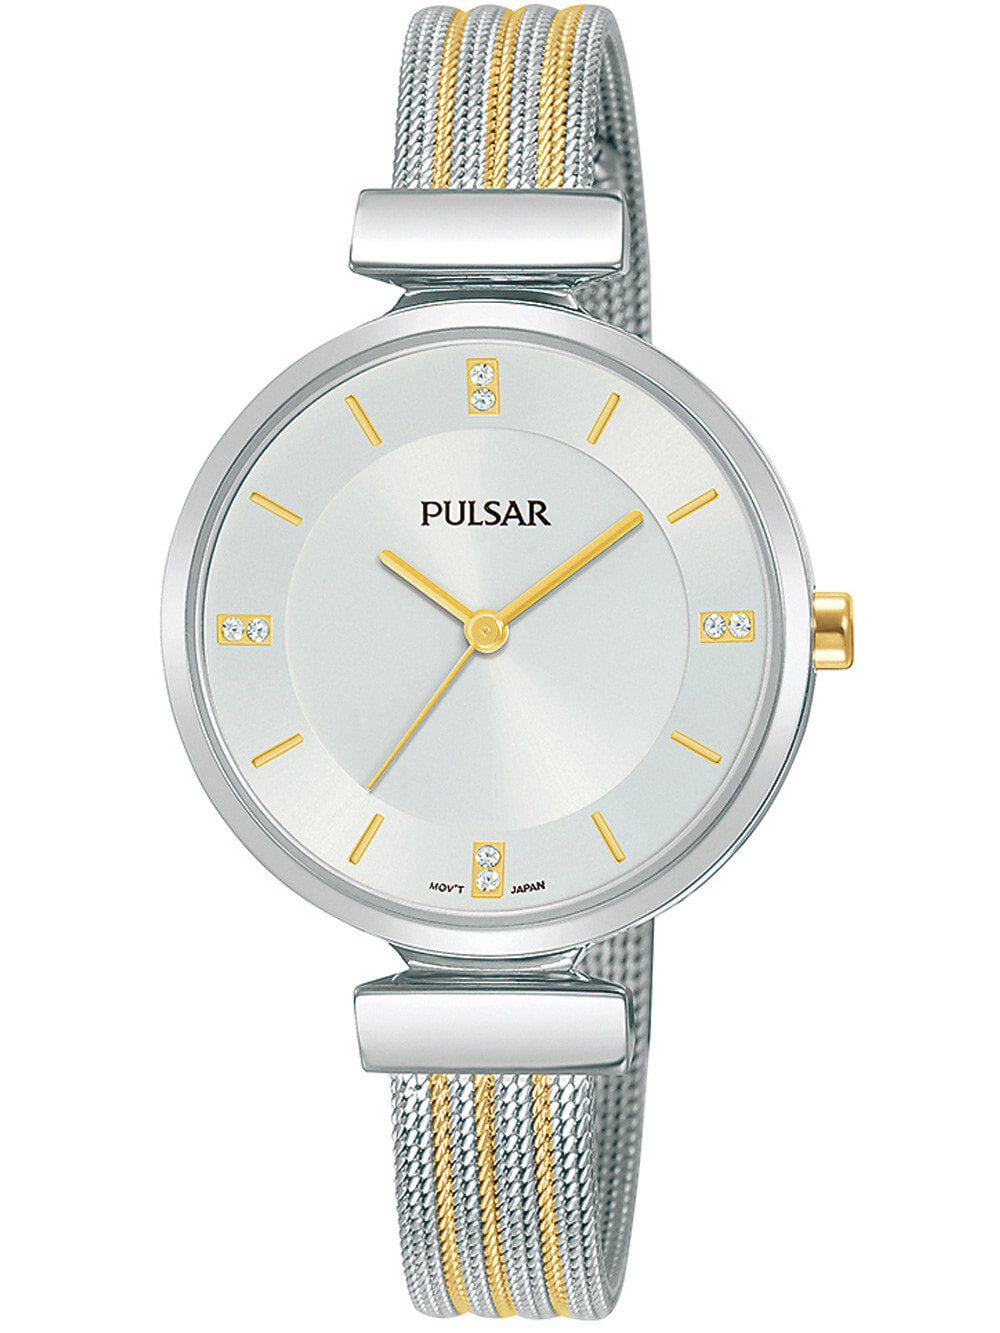 Женские наручные кварцевые часы  Pulsar ремешок из нержавеющей стали. Водонепроницаемость-3 АТМ. Защищенное от царапин минеральное стекло. Декорирован камнями  Swarovski.